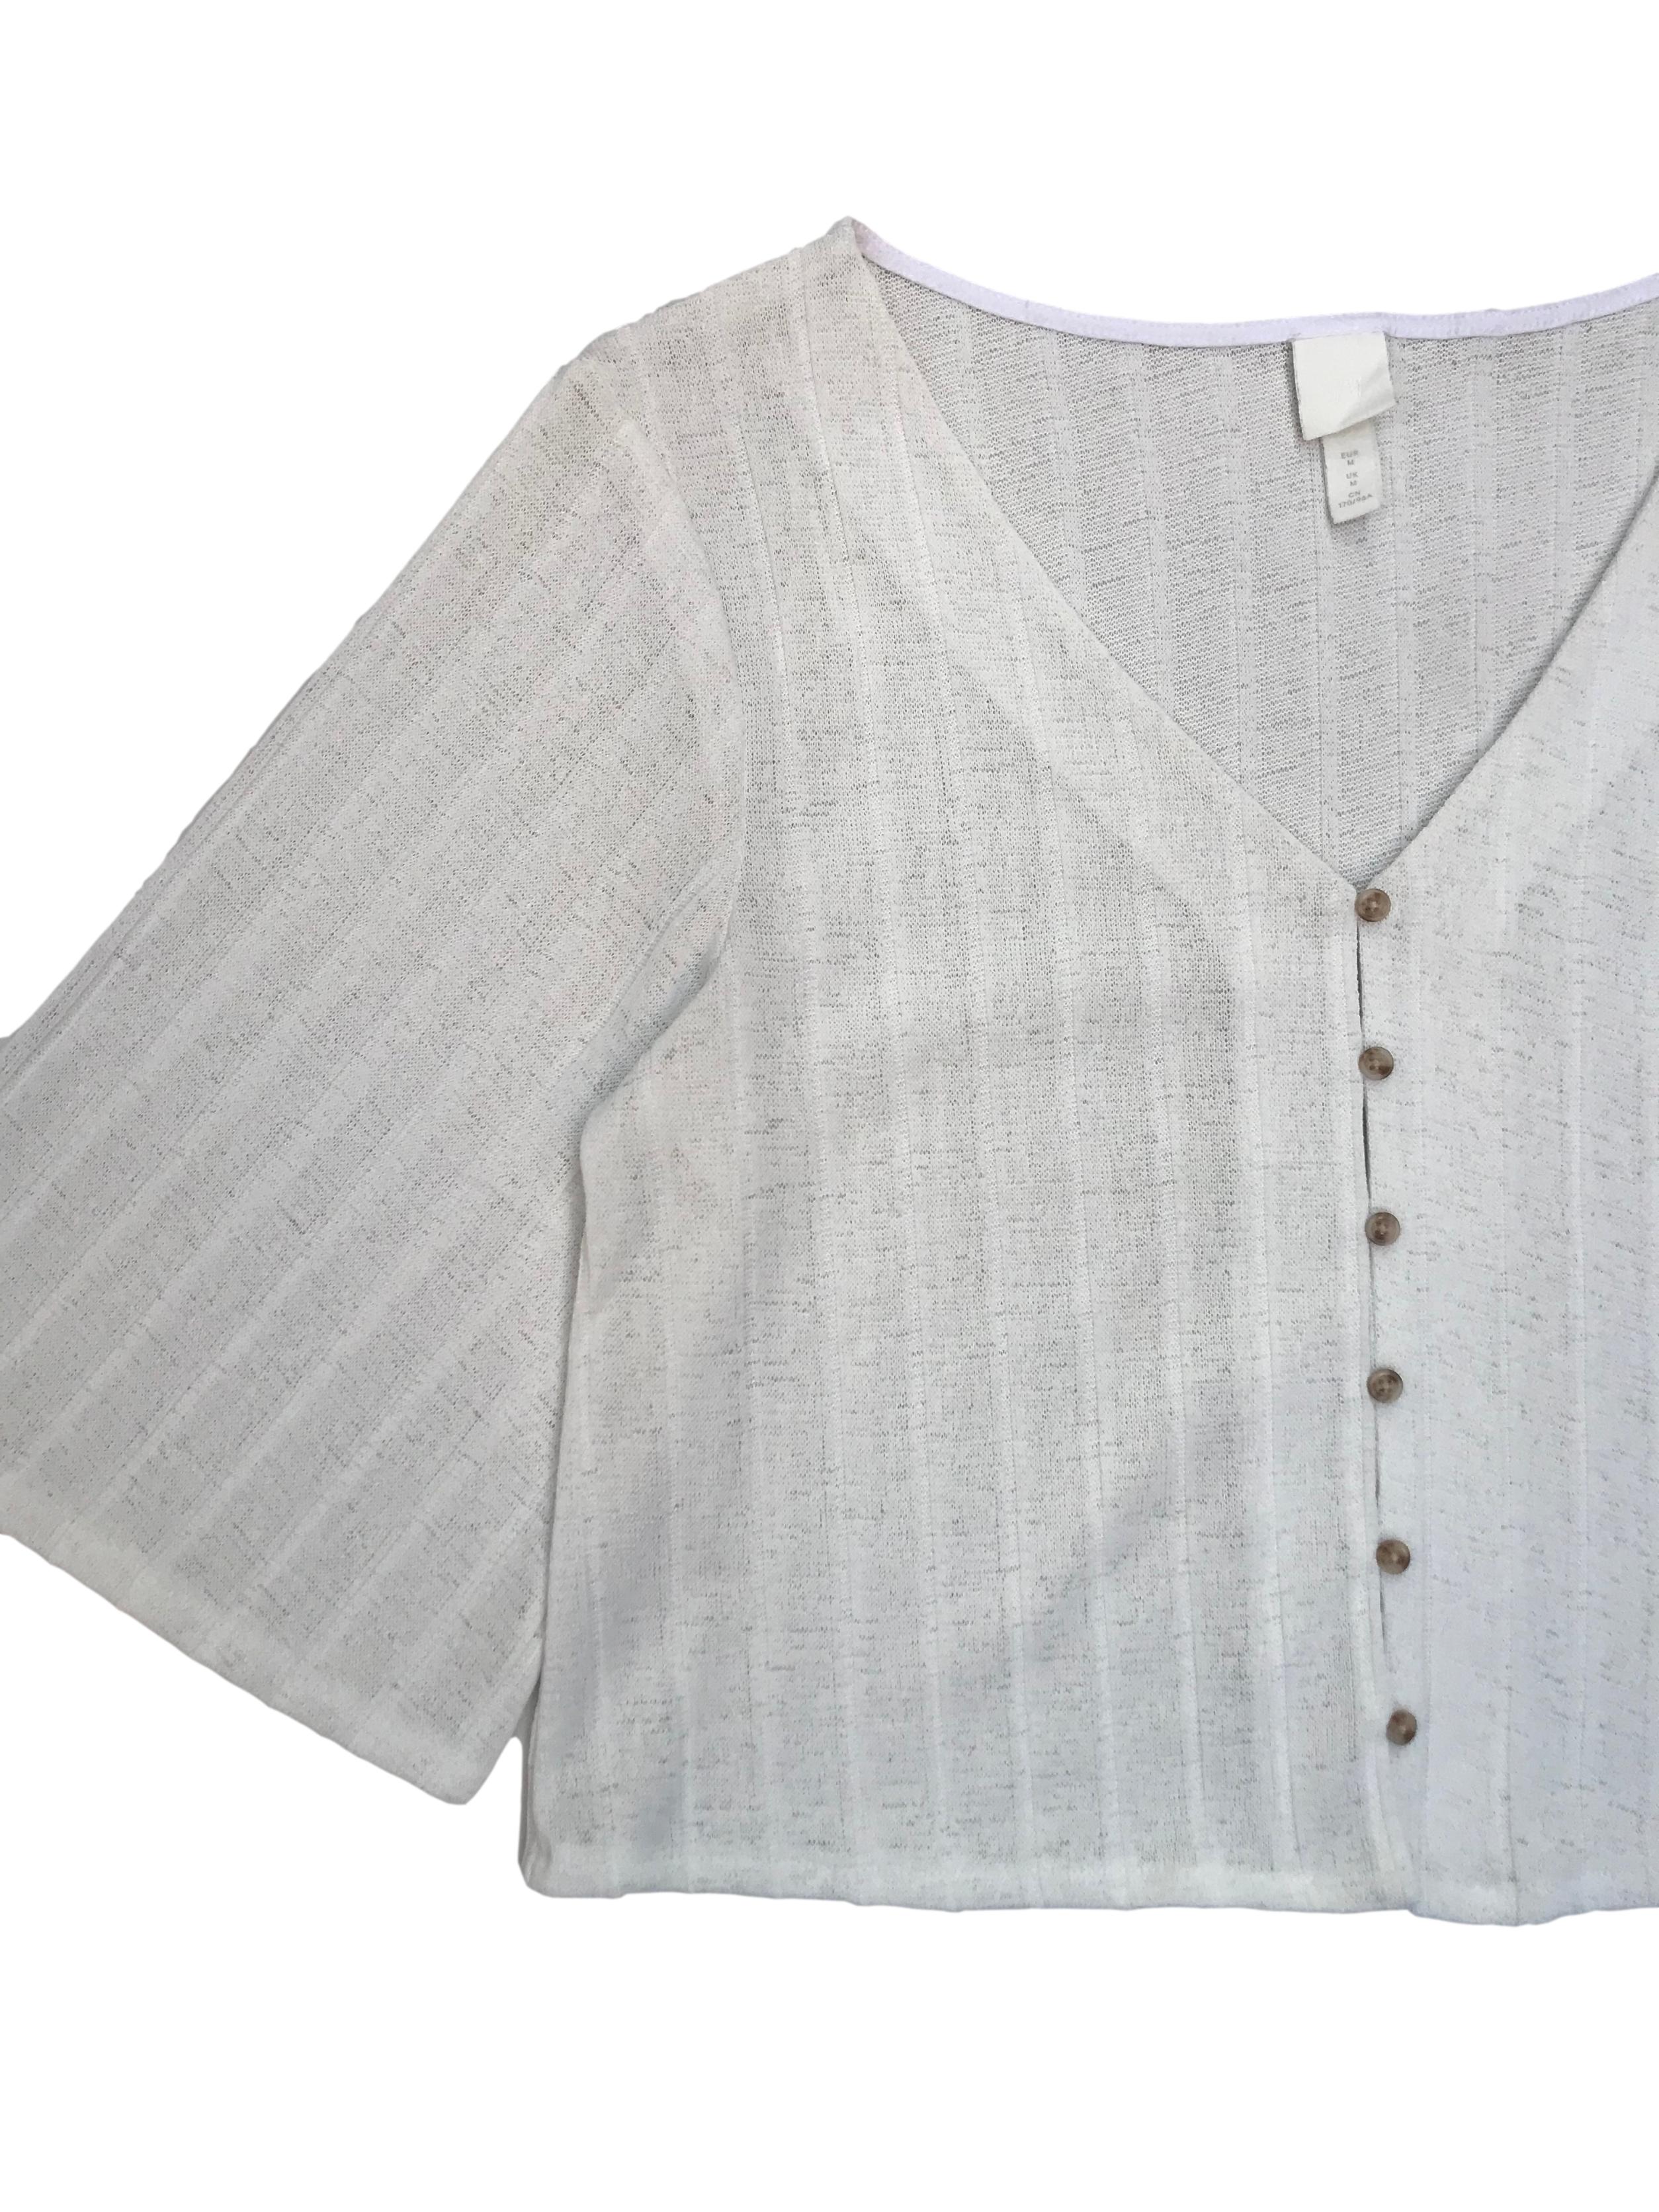 Cardigan H&M con textura en franjas, cuello pico con botones al centro y manga 4/5 campana. Largo 50cm